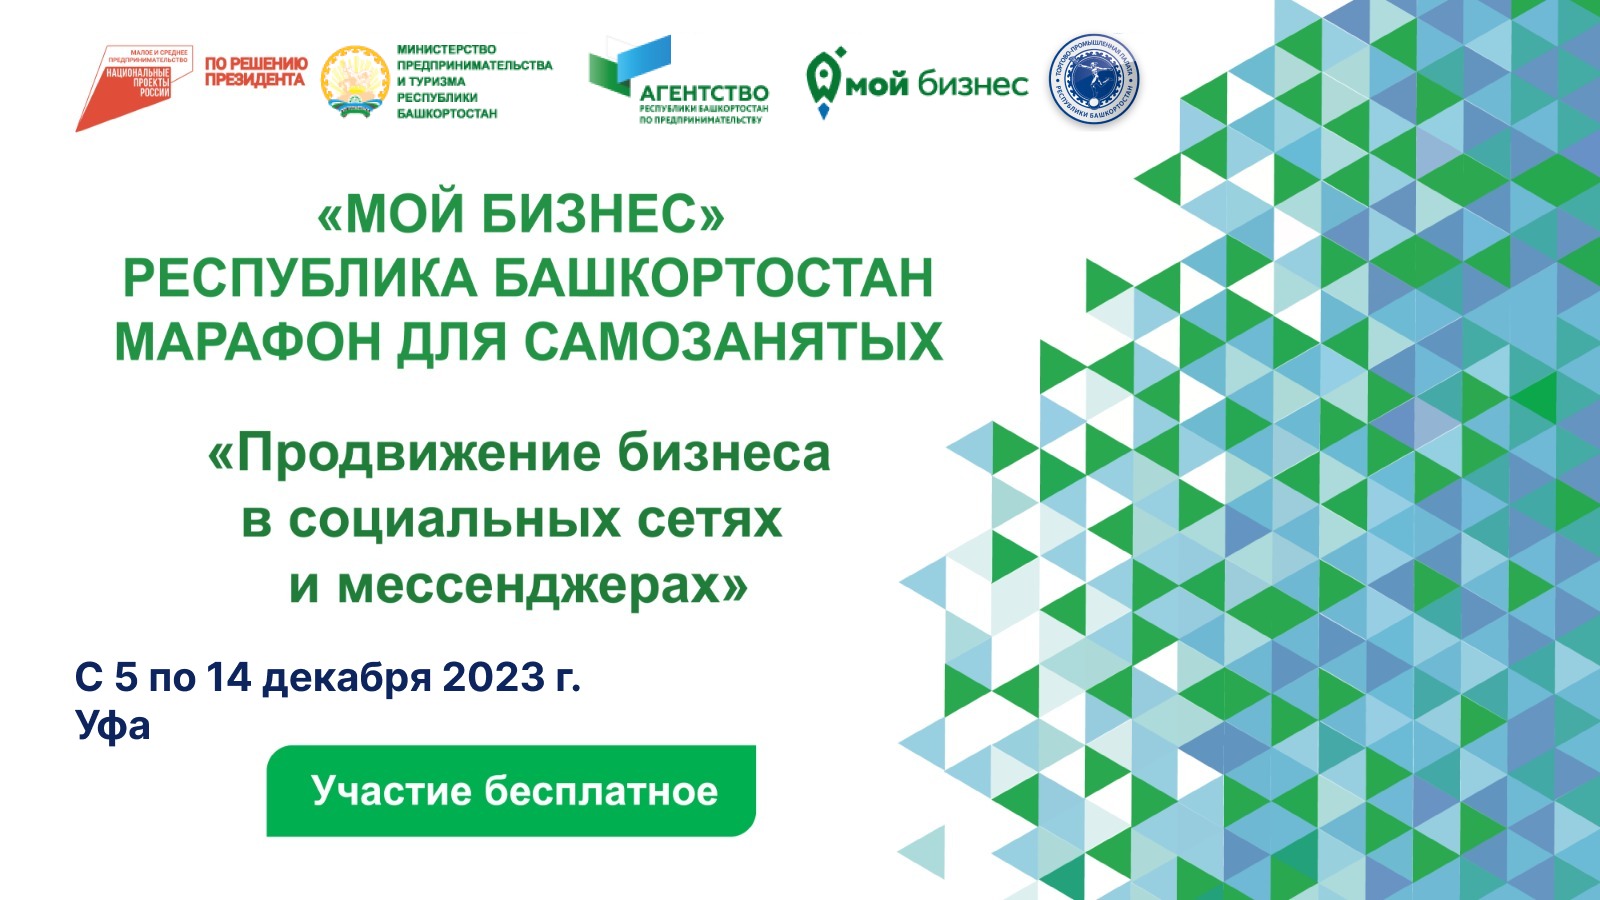 С 5 по 14 декабря для самозанятых граждан Республики Башкортостан пройдет бесплатный марафон «Продвижение бизнеса в социальных сетях и мессенджерах»